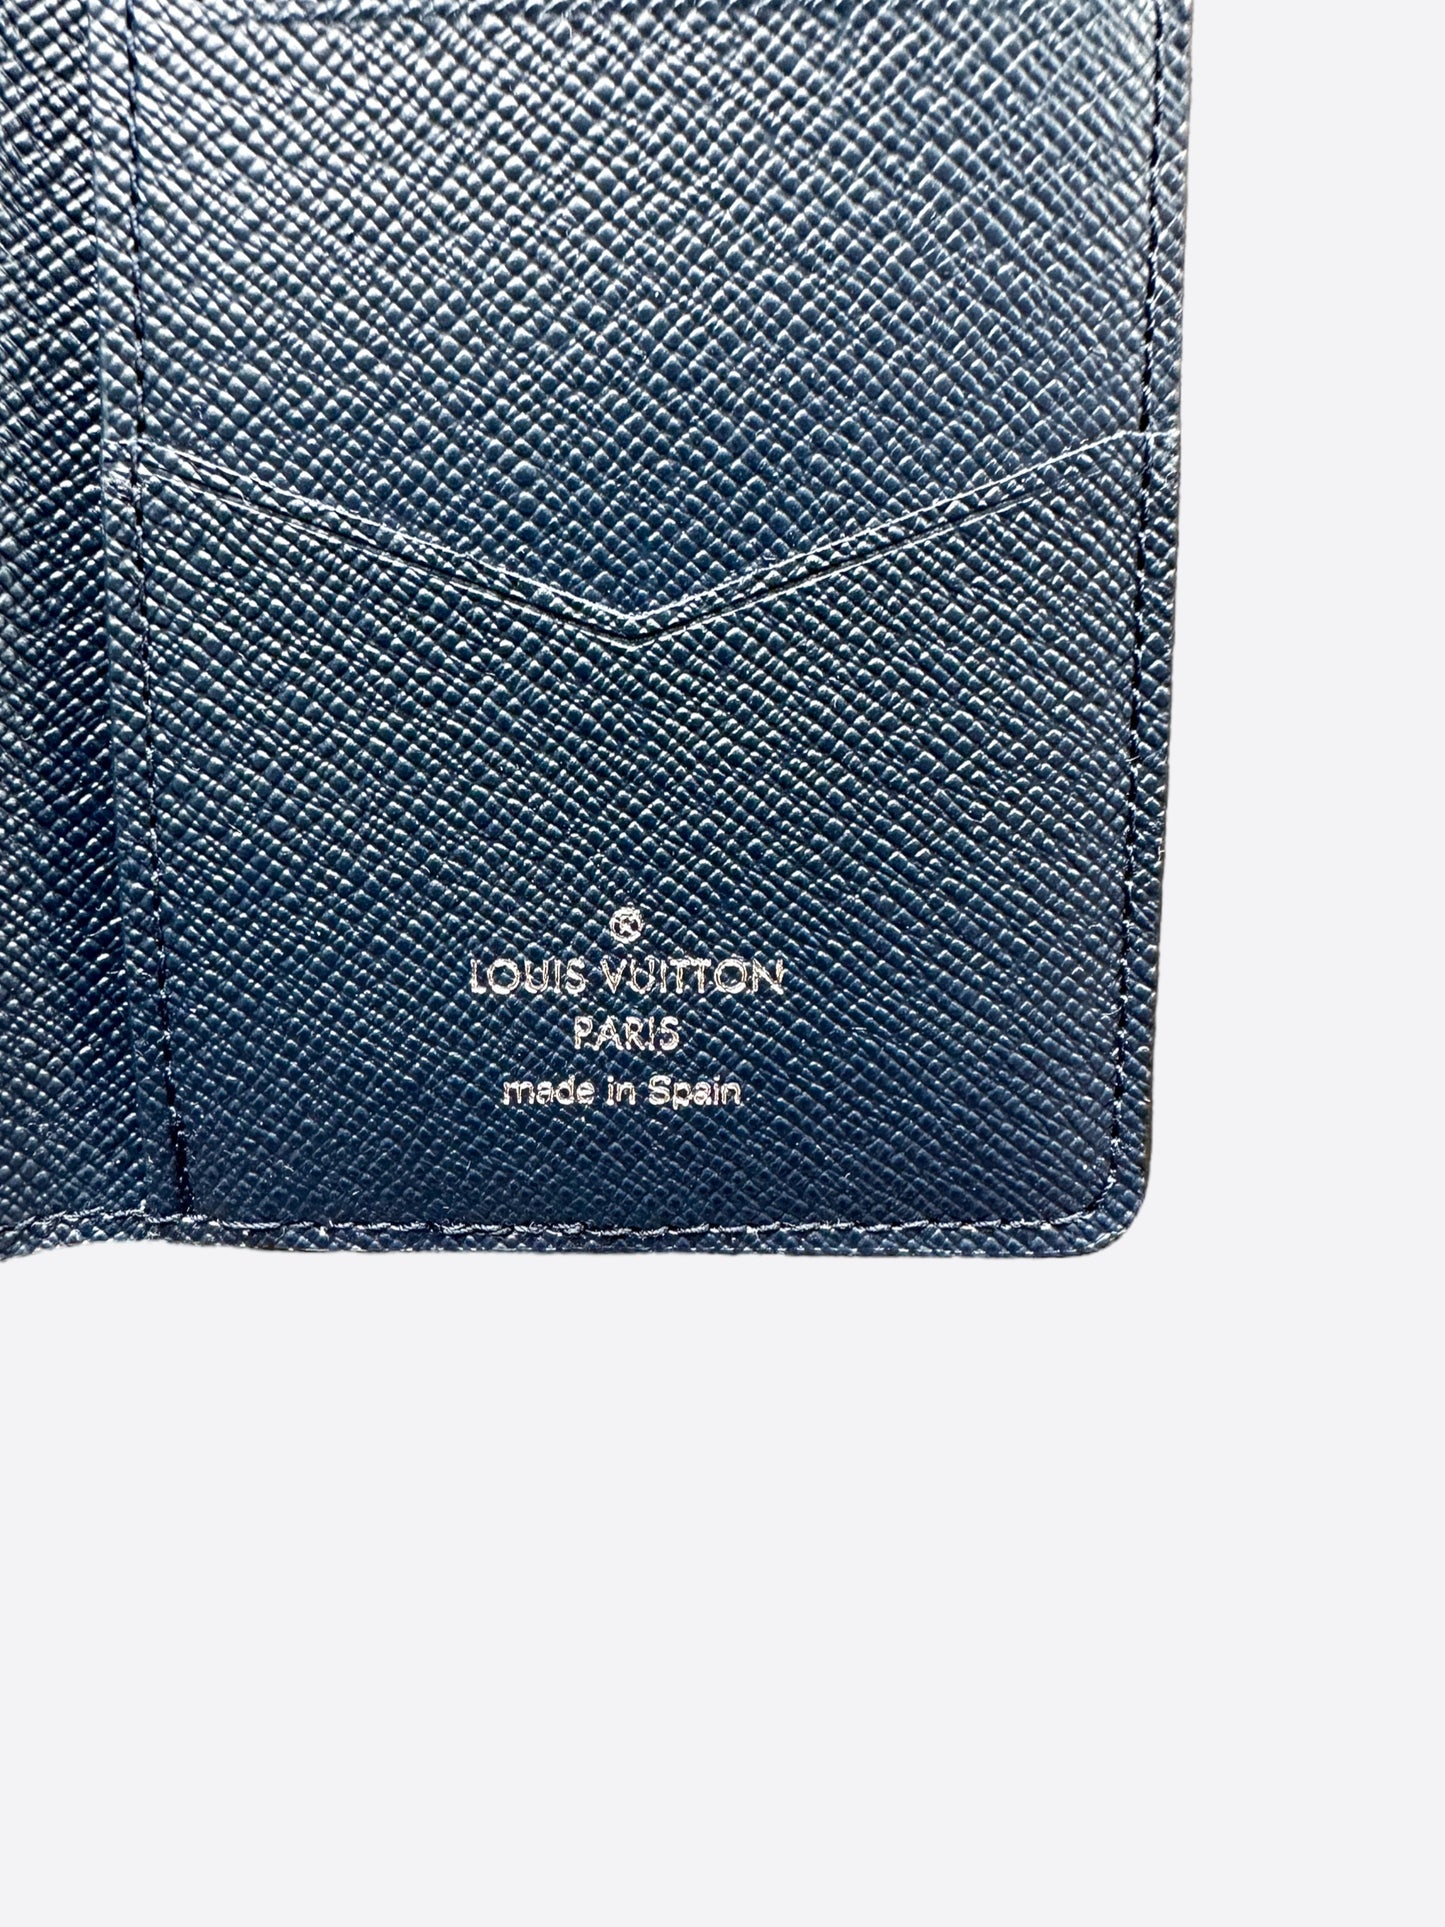 Louis Vuitton Pocket Organizer Damier Azur NM White/Blue in Canvas